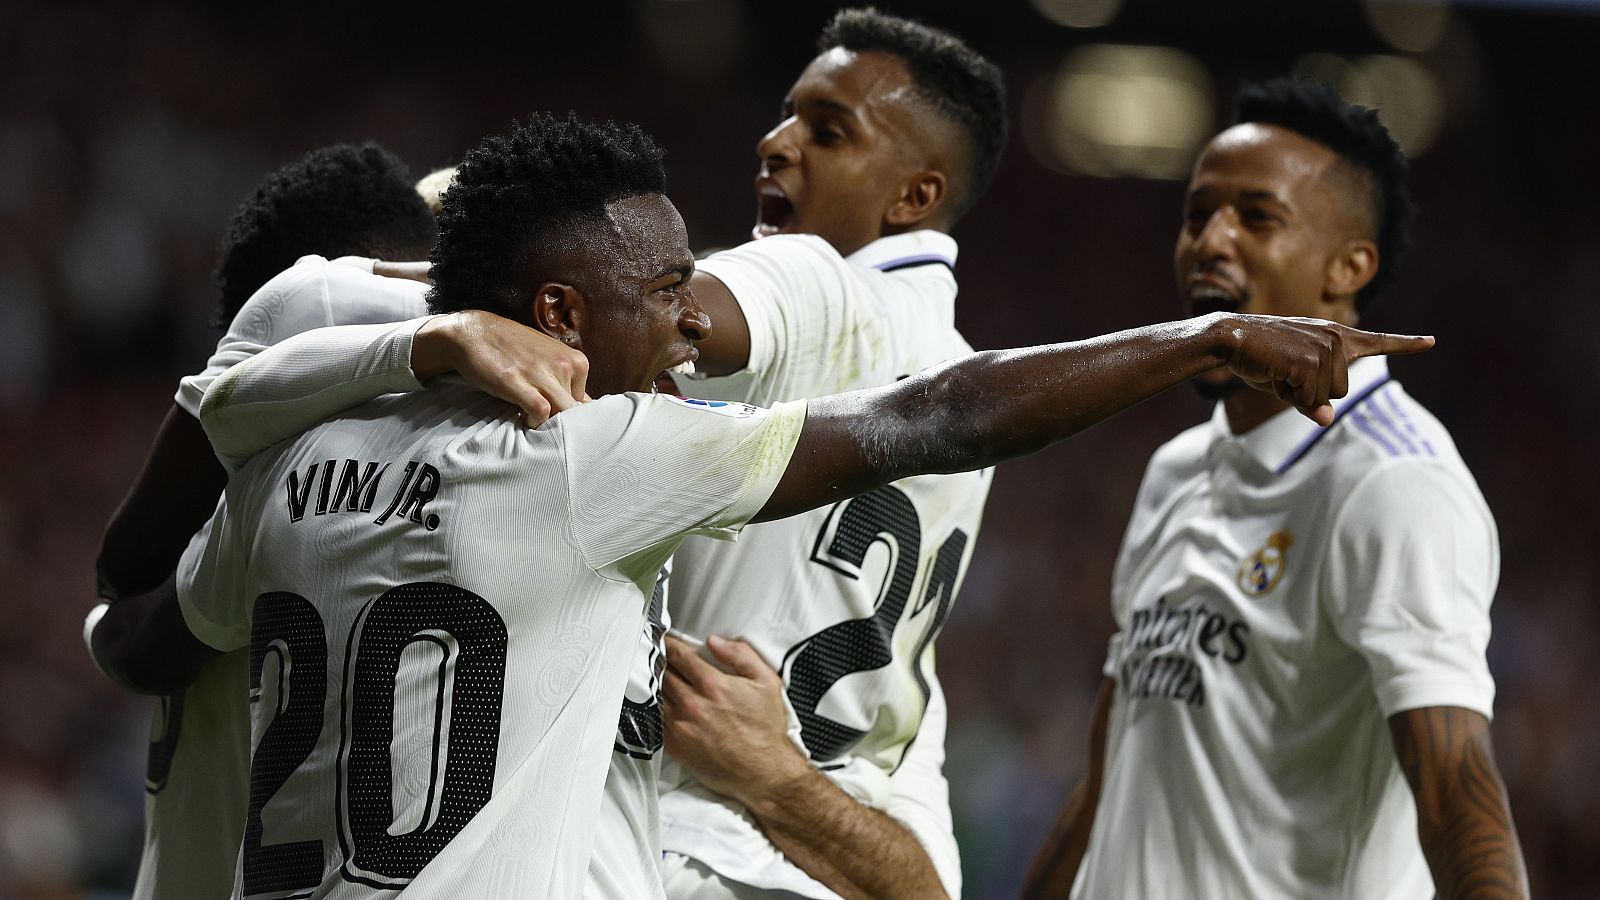 Liga | Atlético de Madrid 1-2 Real Madrid. Resumen 6ª jornada - ver ahora